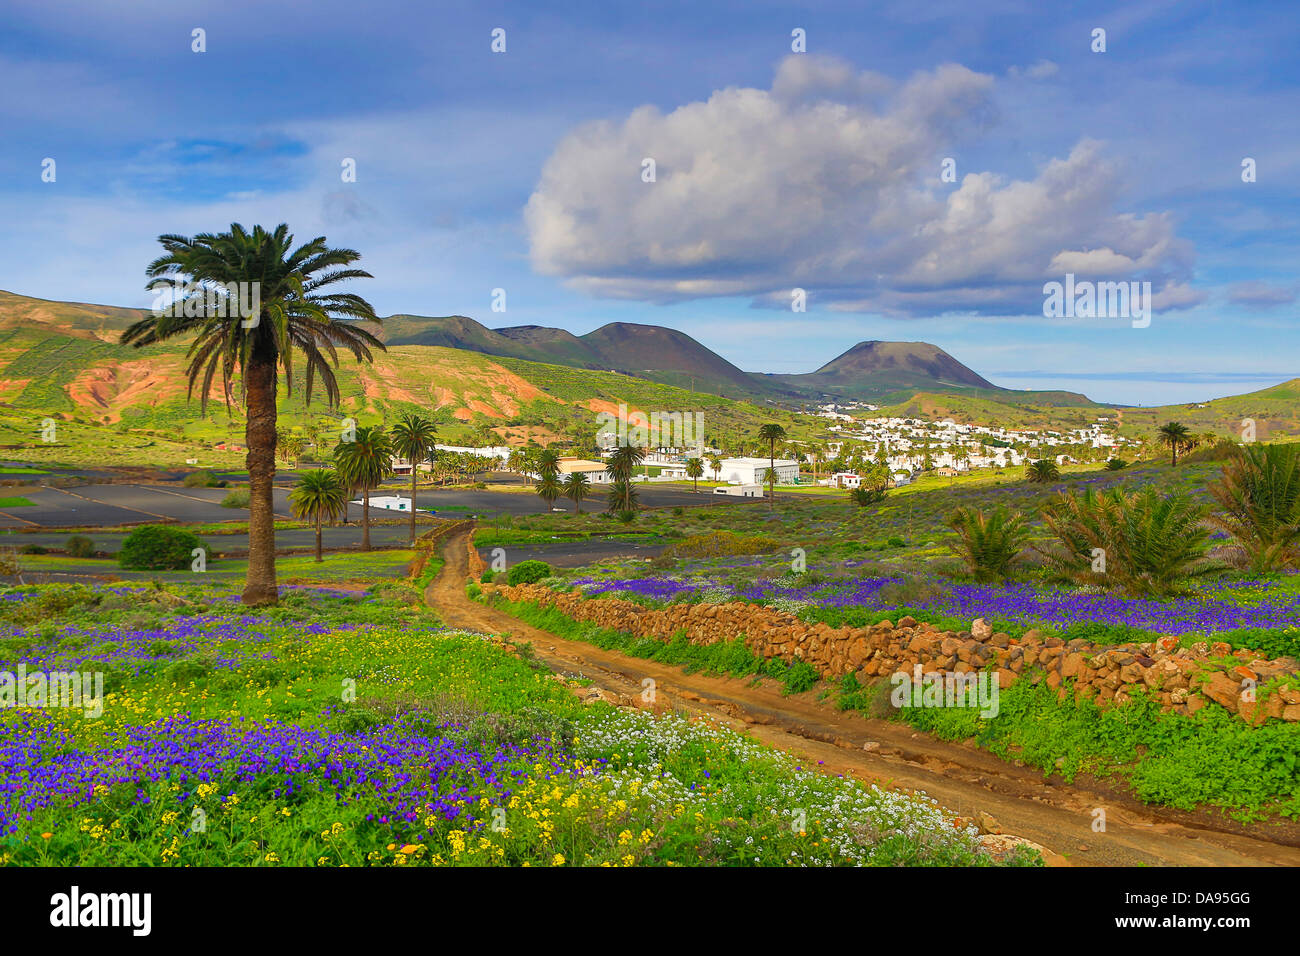 L'Espagne, Europe, Îles Canaries, Haria, Lanzarote, Mague, Village, l'agriculture, coloré, fleurs, l'île, paysage, palmier, Banque D'Images